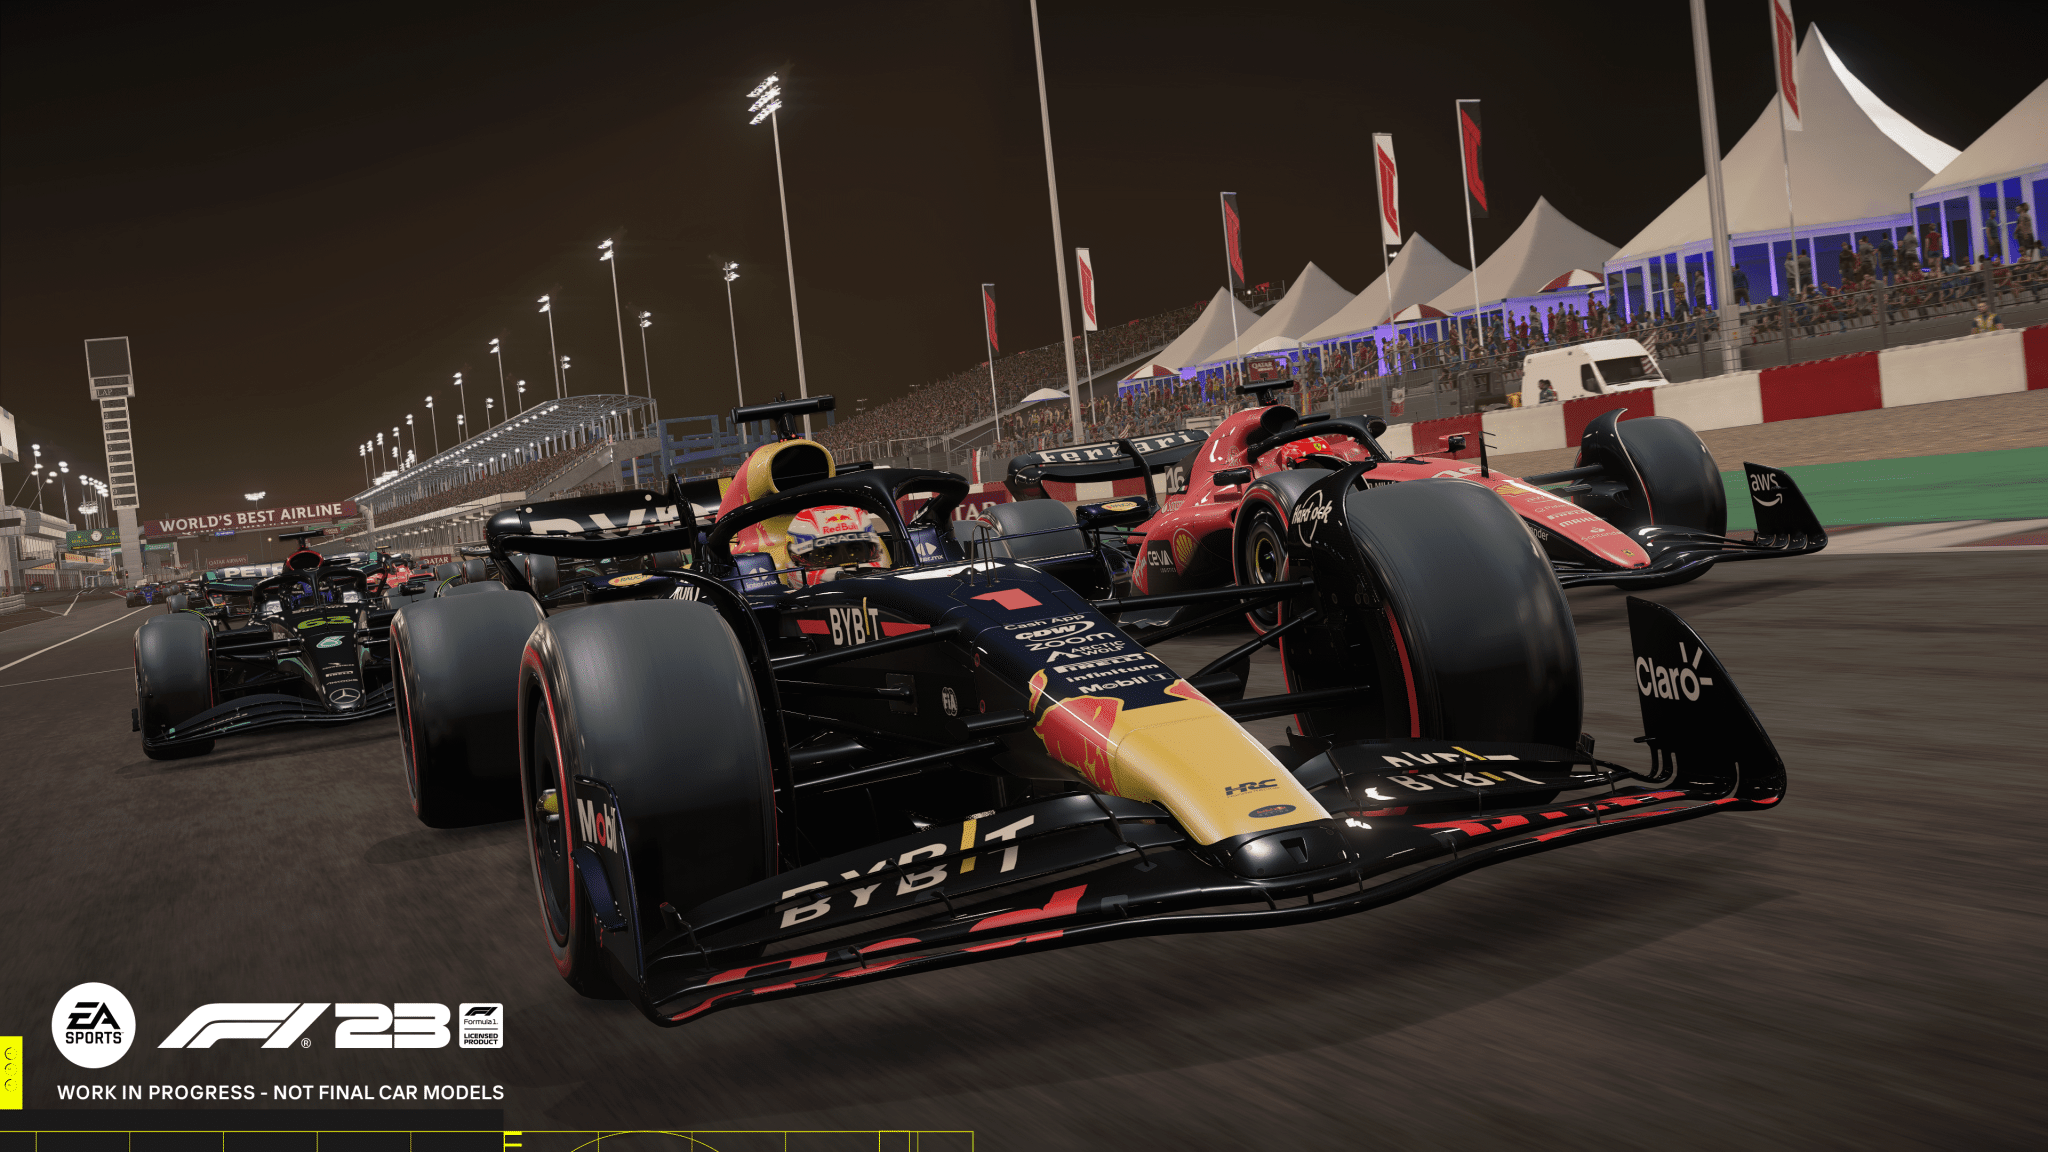 Dal garage alla pista nel nuovo trailer di EA Sports F1 23! 6